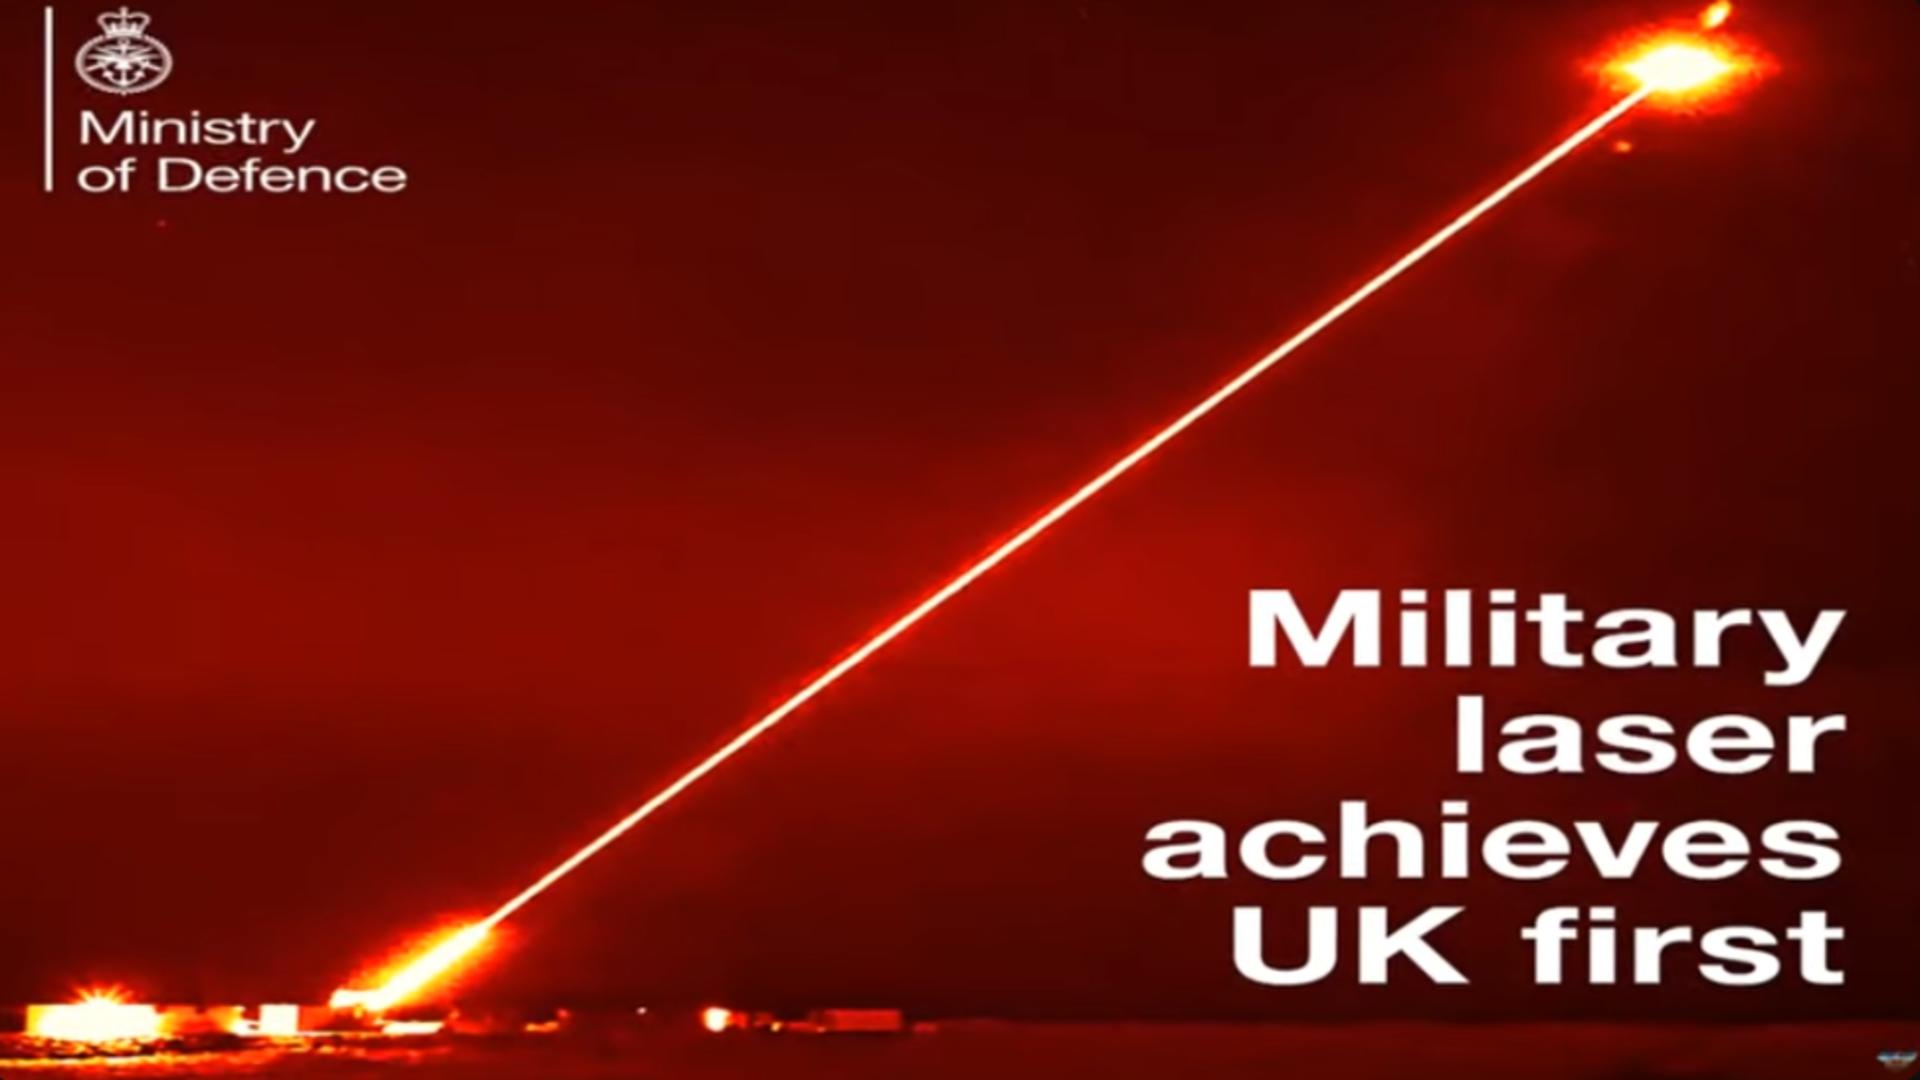 Marea Britanie a dezvăluit mega-laserul futurist. Foto: YouTube